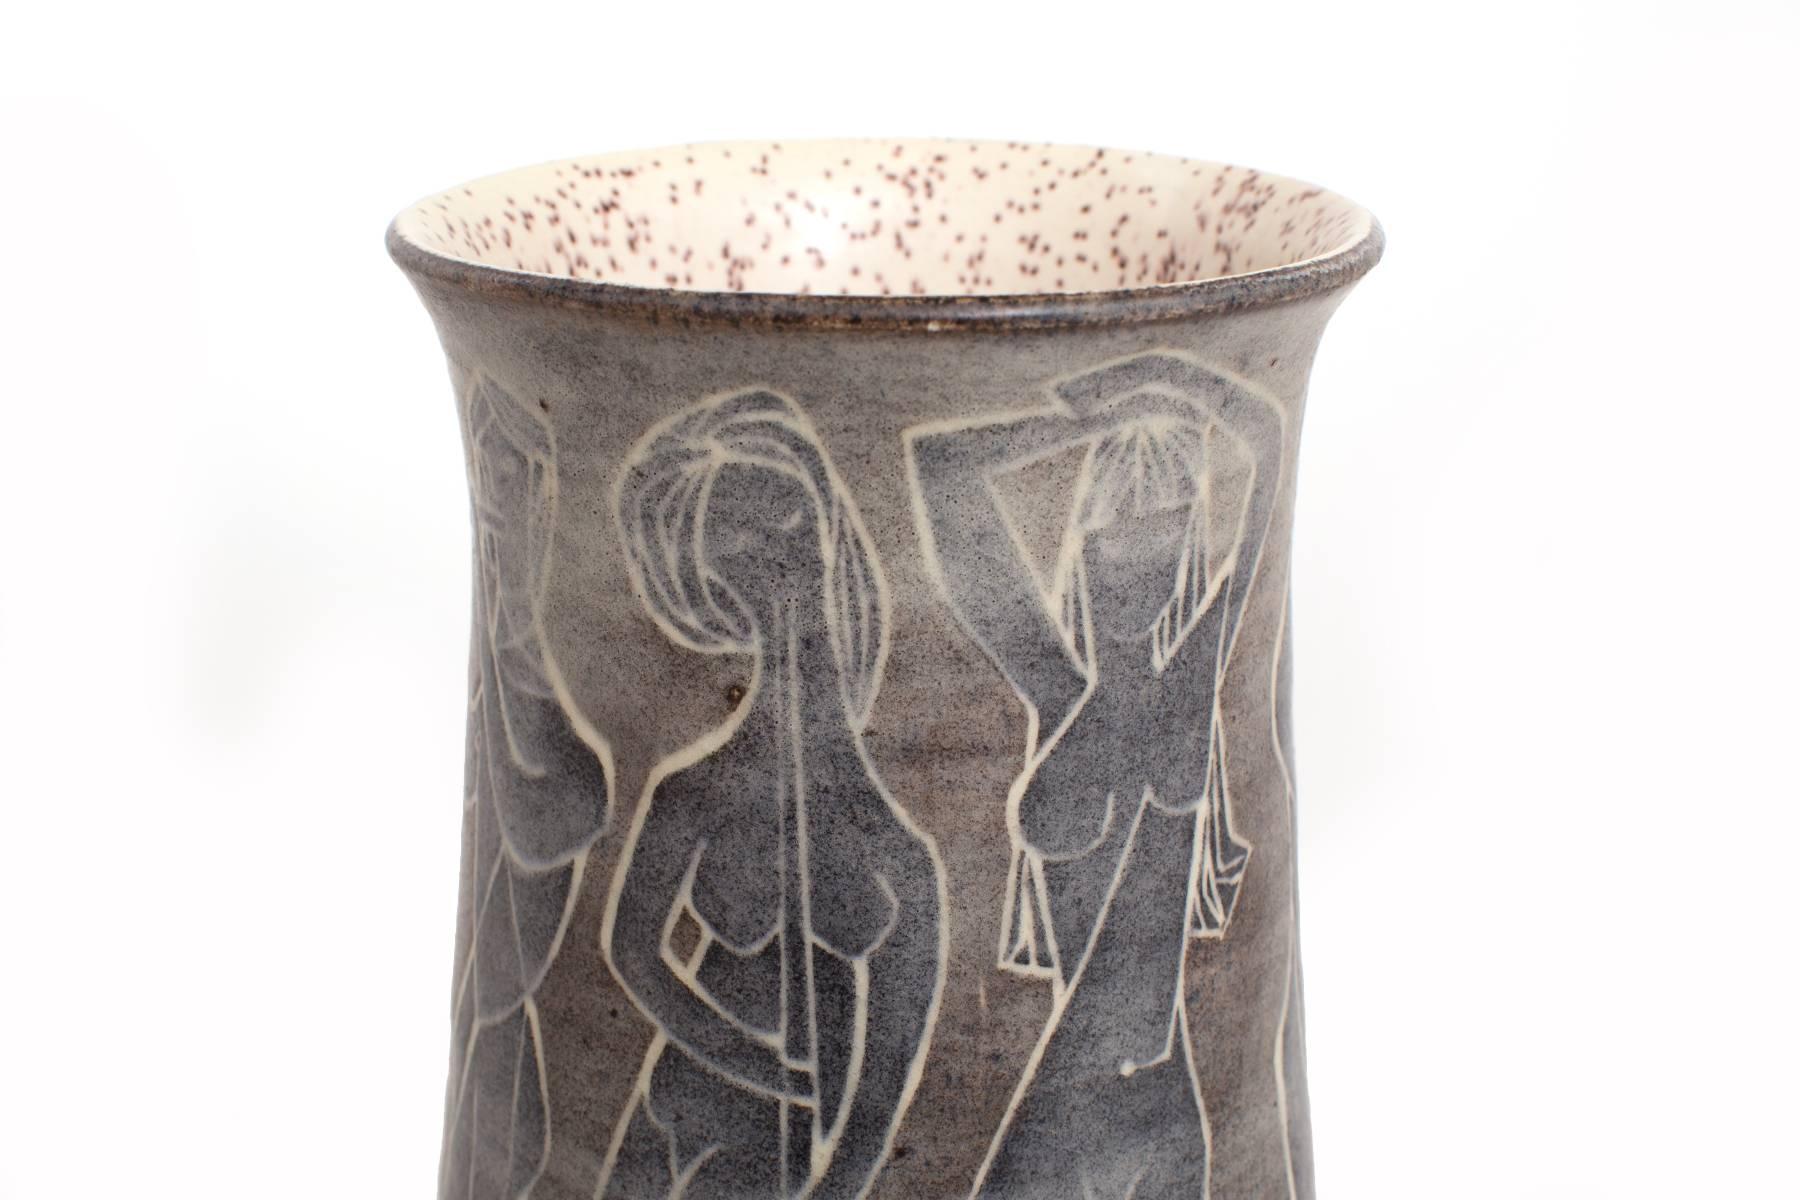 Glasiertes Keramikgefäß von Marcello Fantoni, ca. Anfang der 1960er Jahre. Dieses fabelhafte Exemplar ist außen mit handgemalten Frauenfiguren und innen mit einer gesprenkelten Glasur versehen.